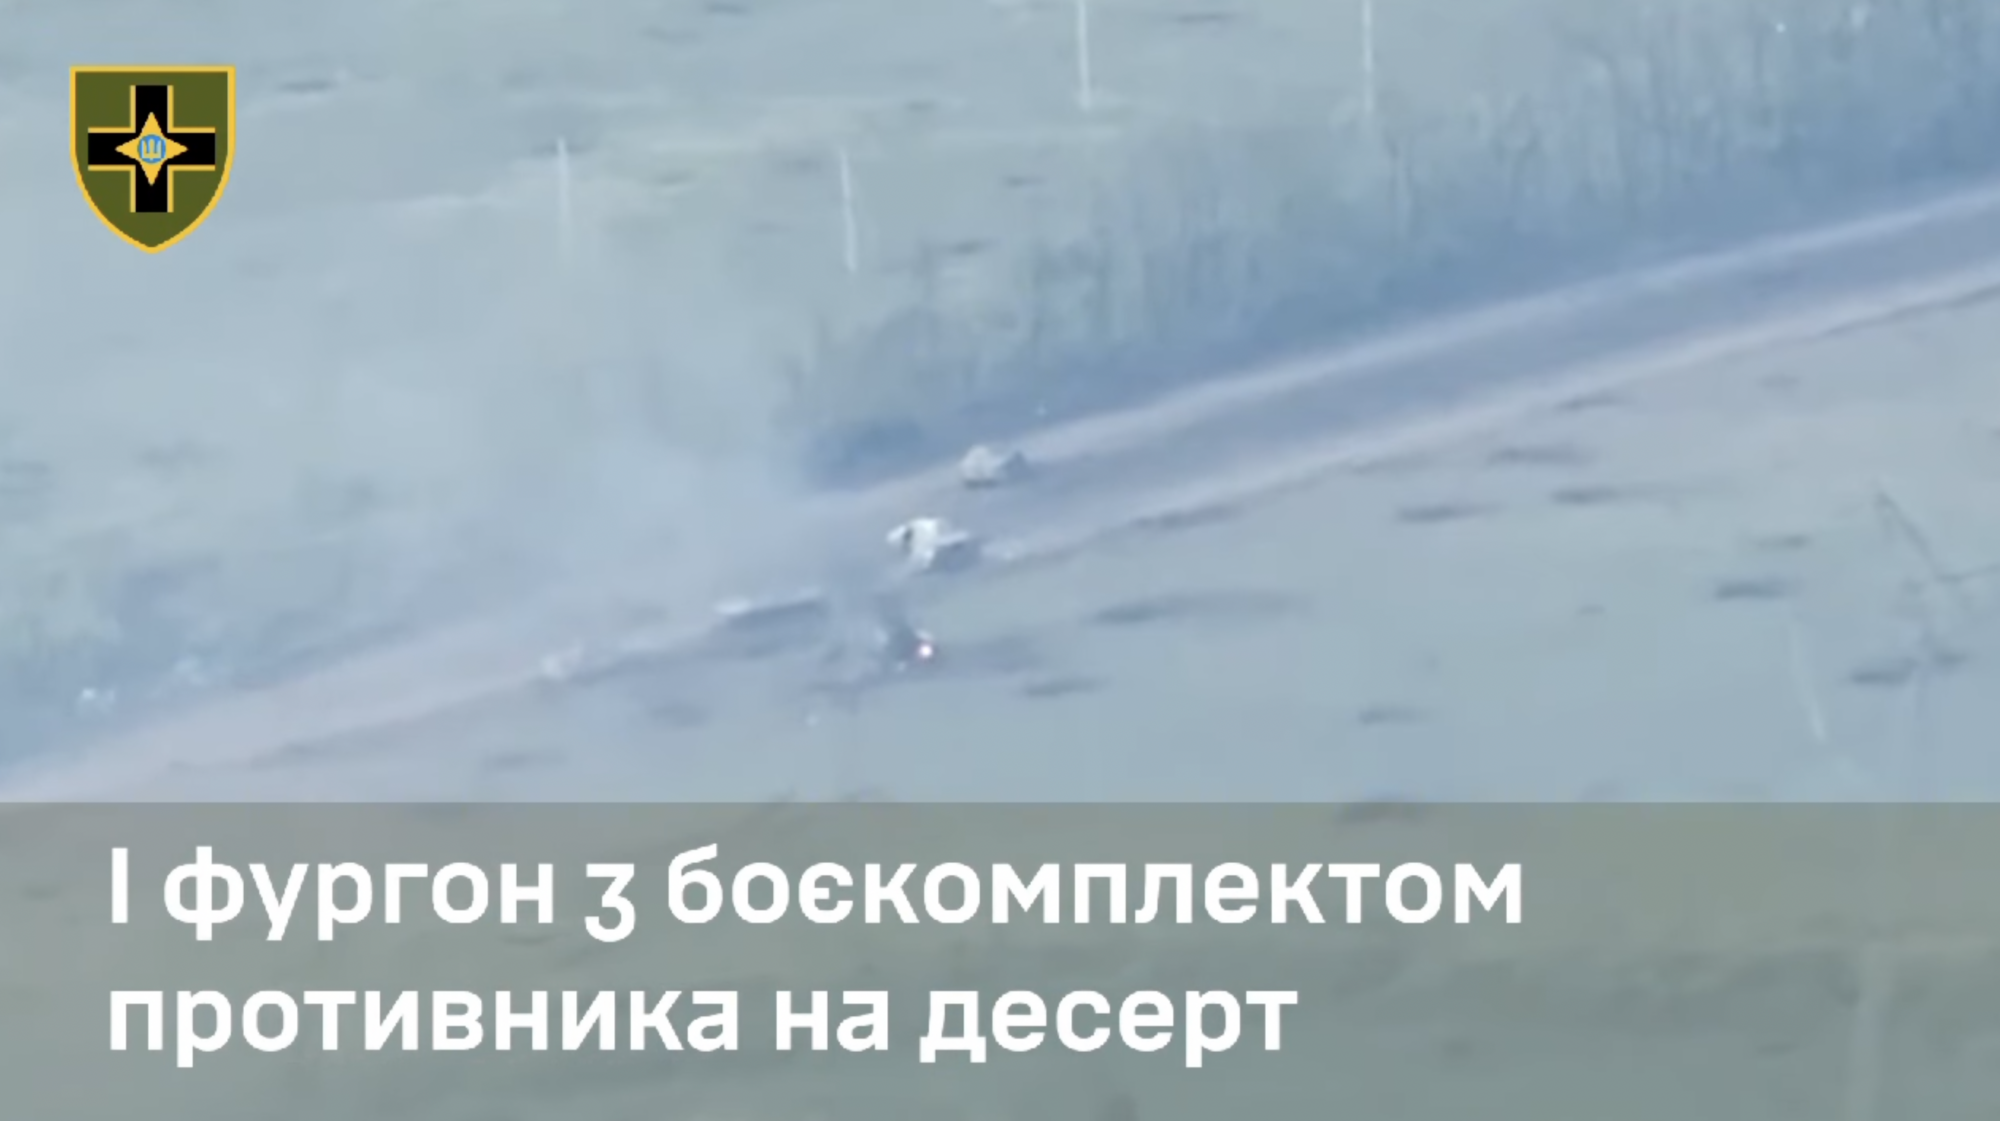 Минус 10 единиц техники врага: артиллеристы показали, как бьют оккупантов на Донбассе. Видео